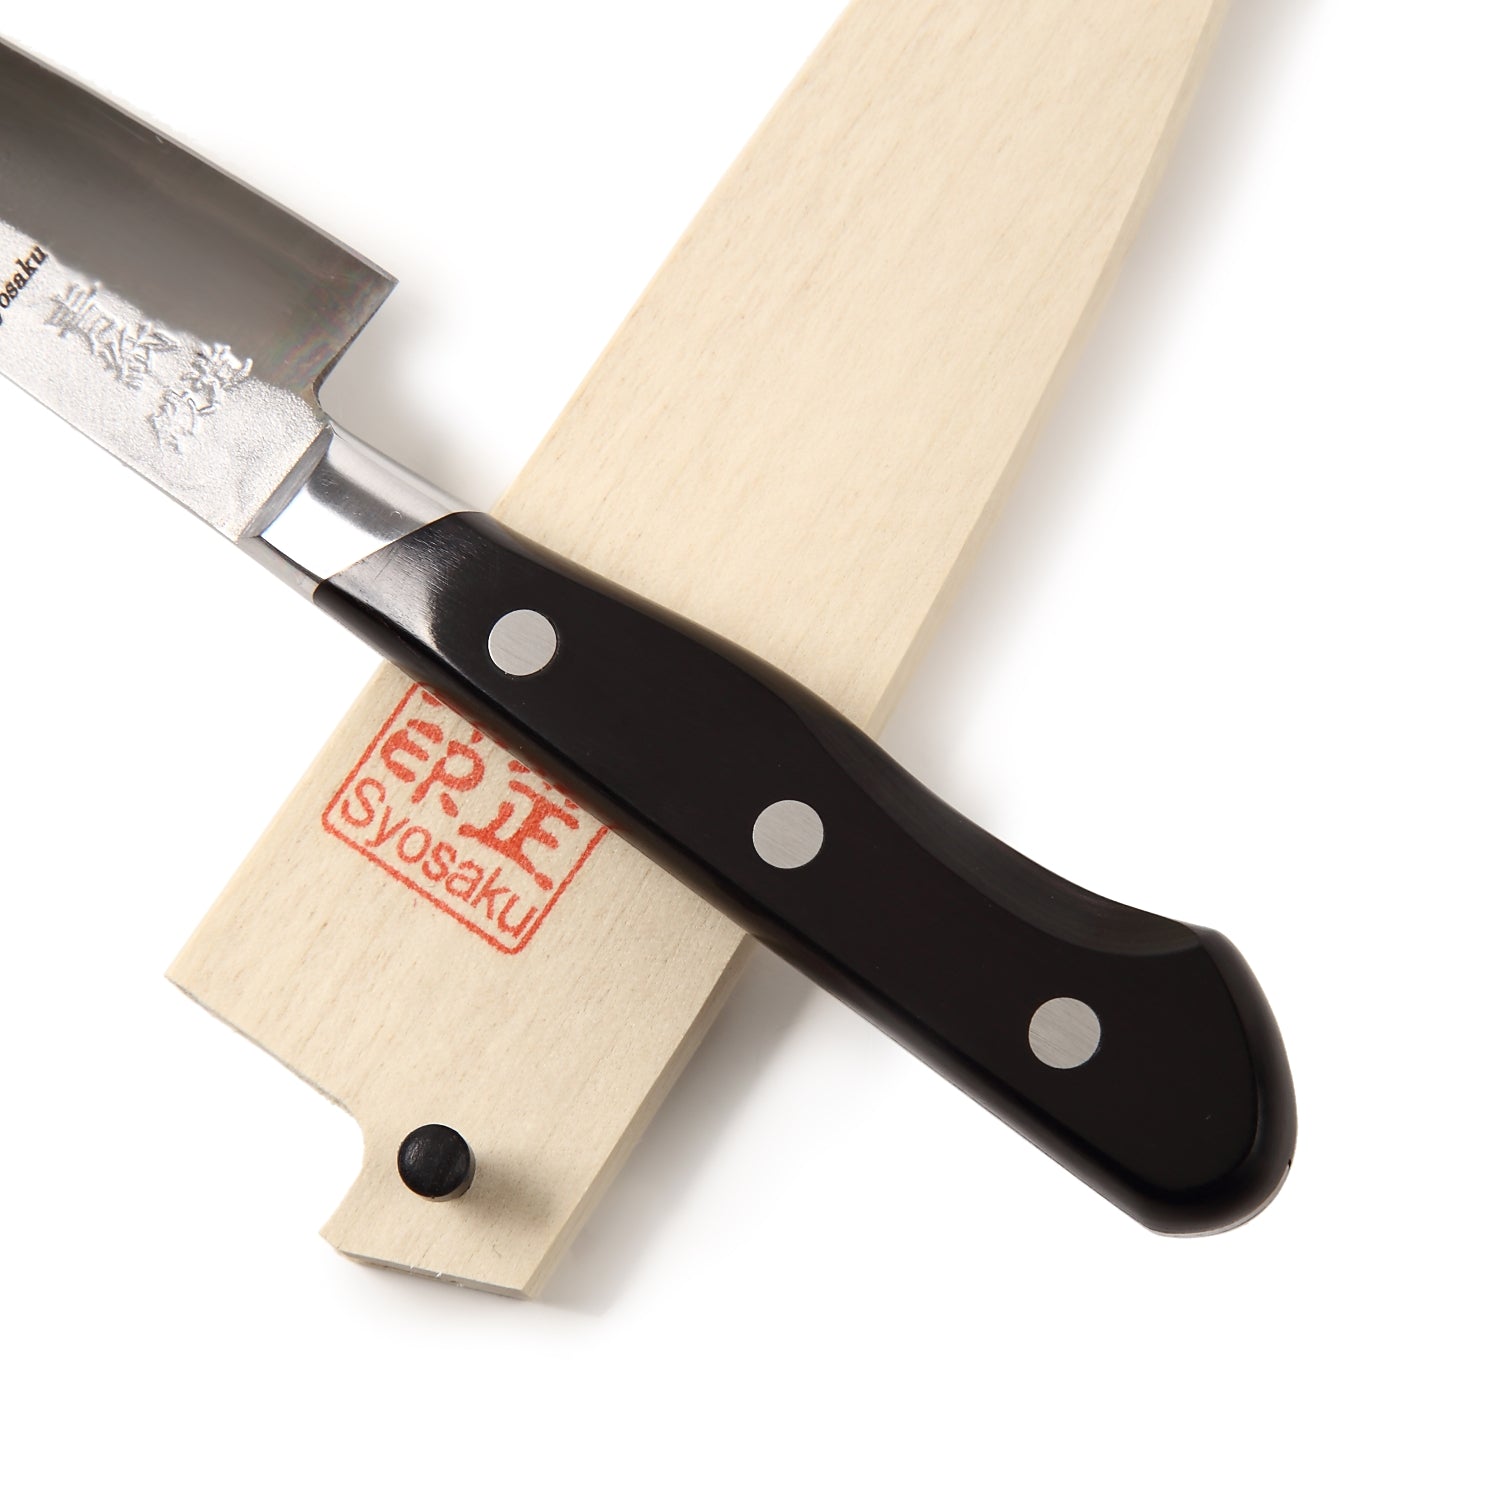 Syosaku Japanese Petty Best Sharp Kitchen Chef Knife Aoko(Blue Steel)-No.2 Black Pakkawood Handle, 5.3-inch (135mm) with Magnolia Wood Sheath Saya - Syosaku-Japan